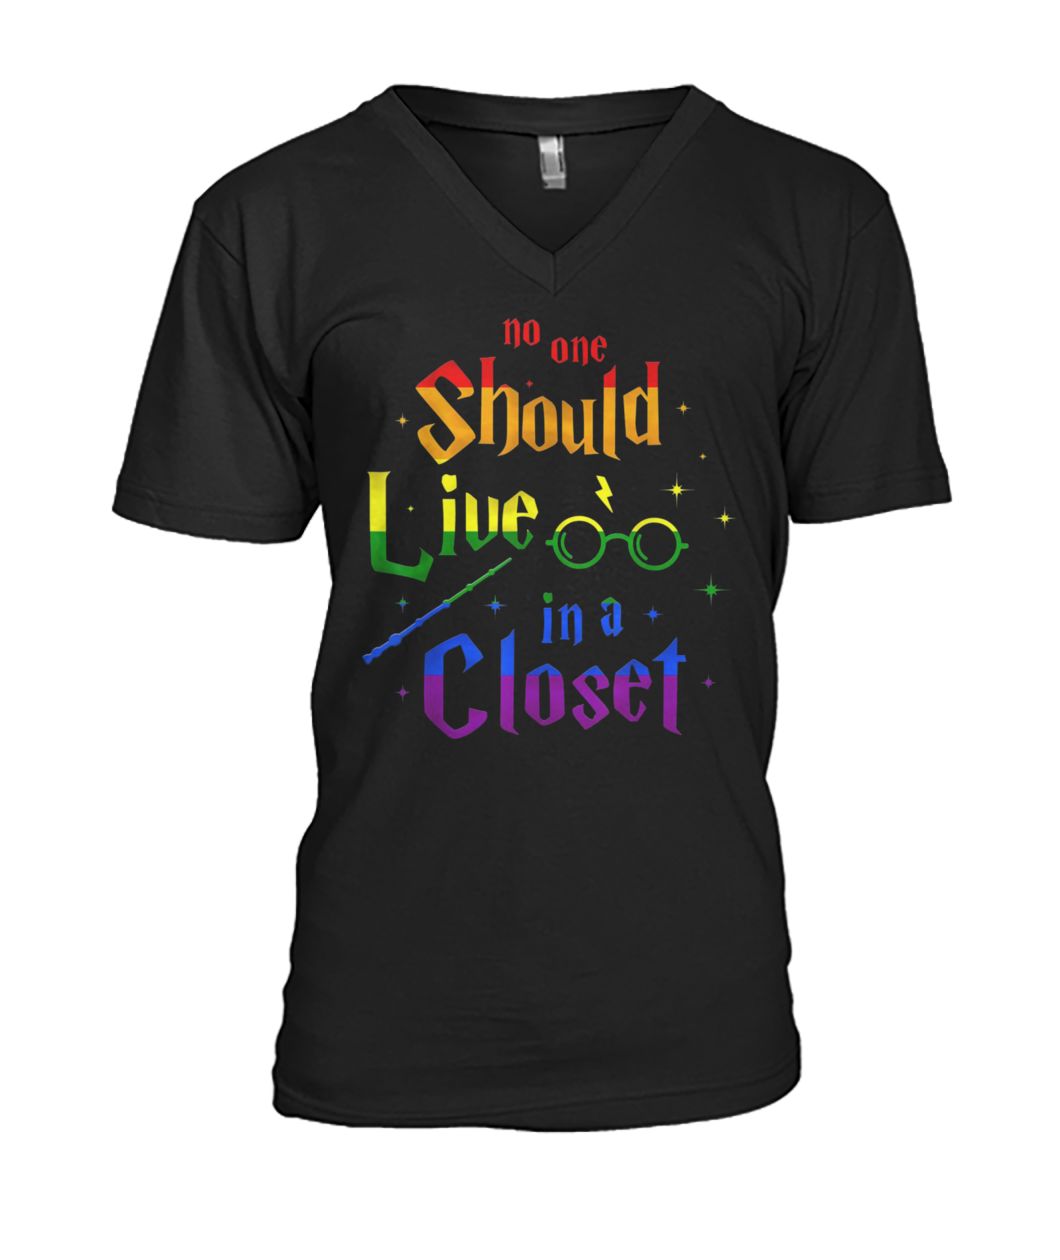 No one should live in a closet LGBT gay pride mens v-neck